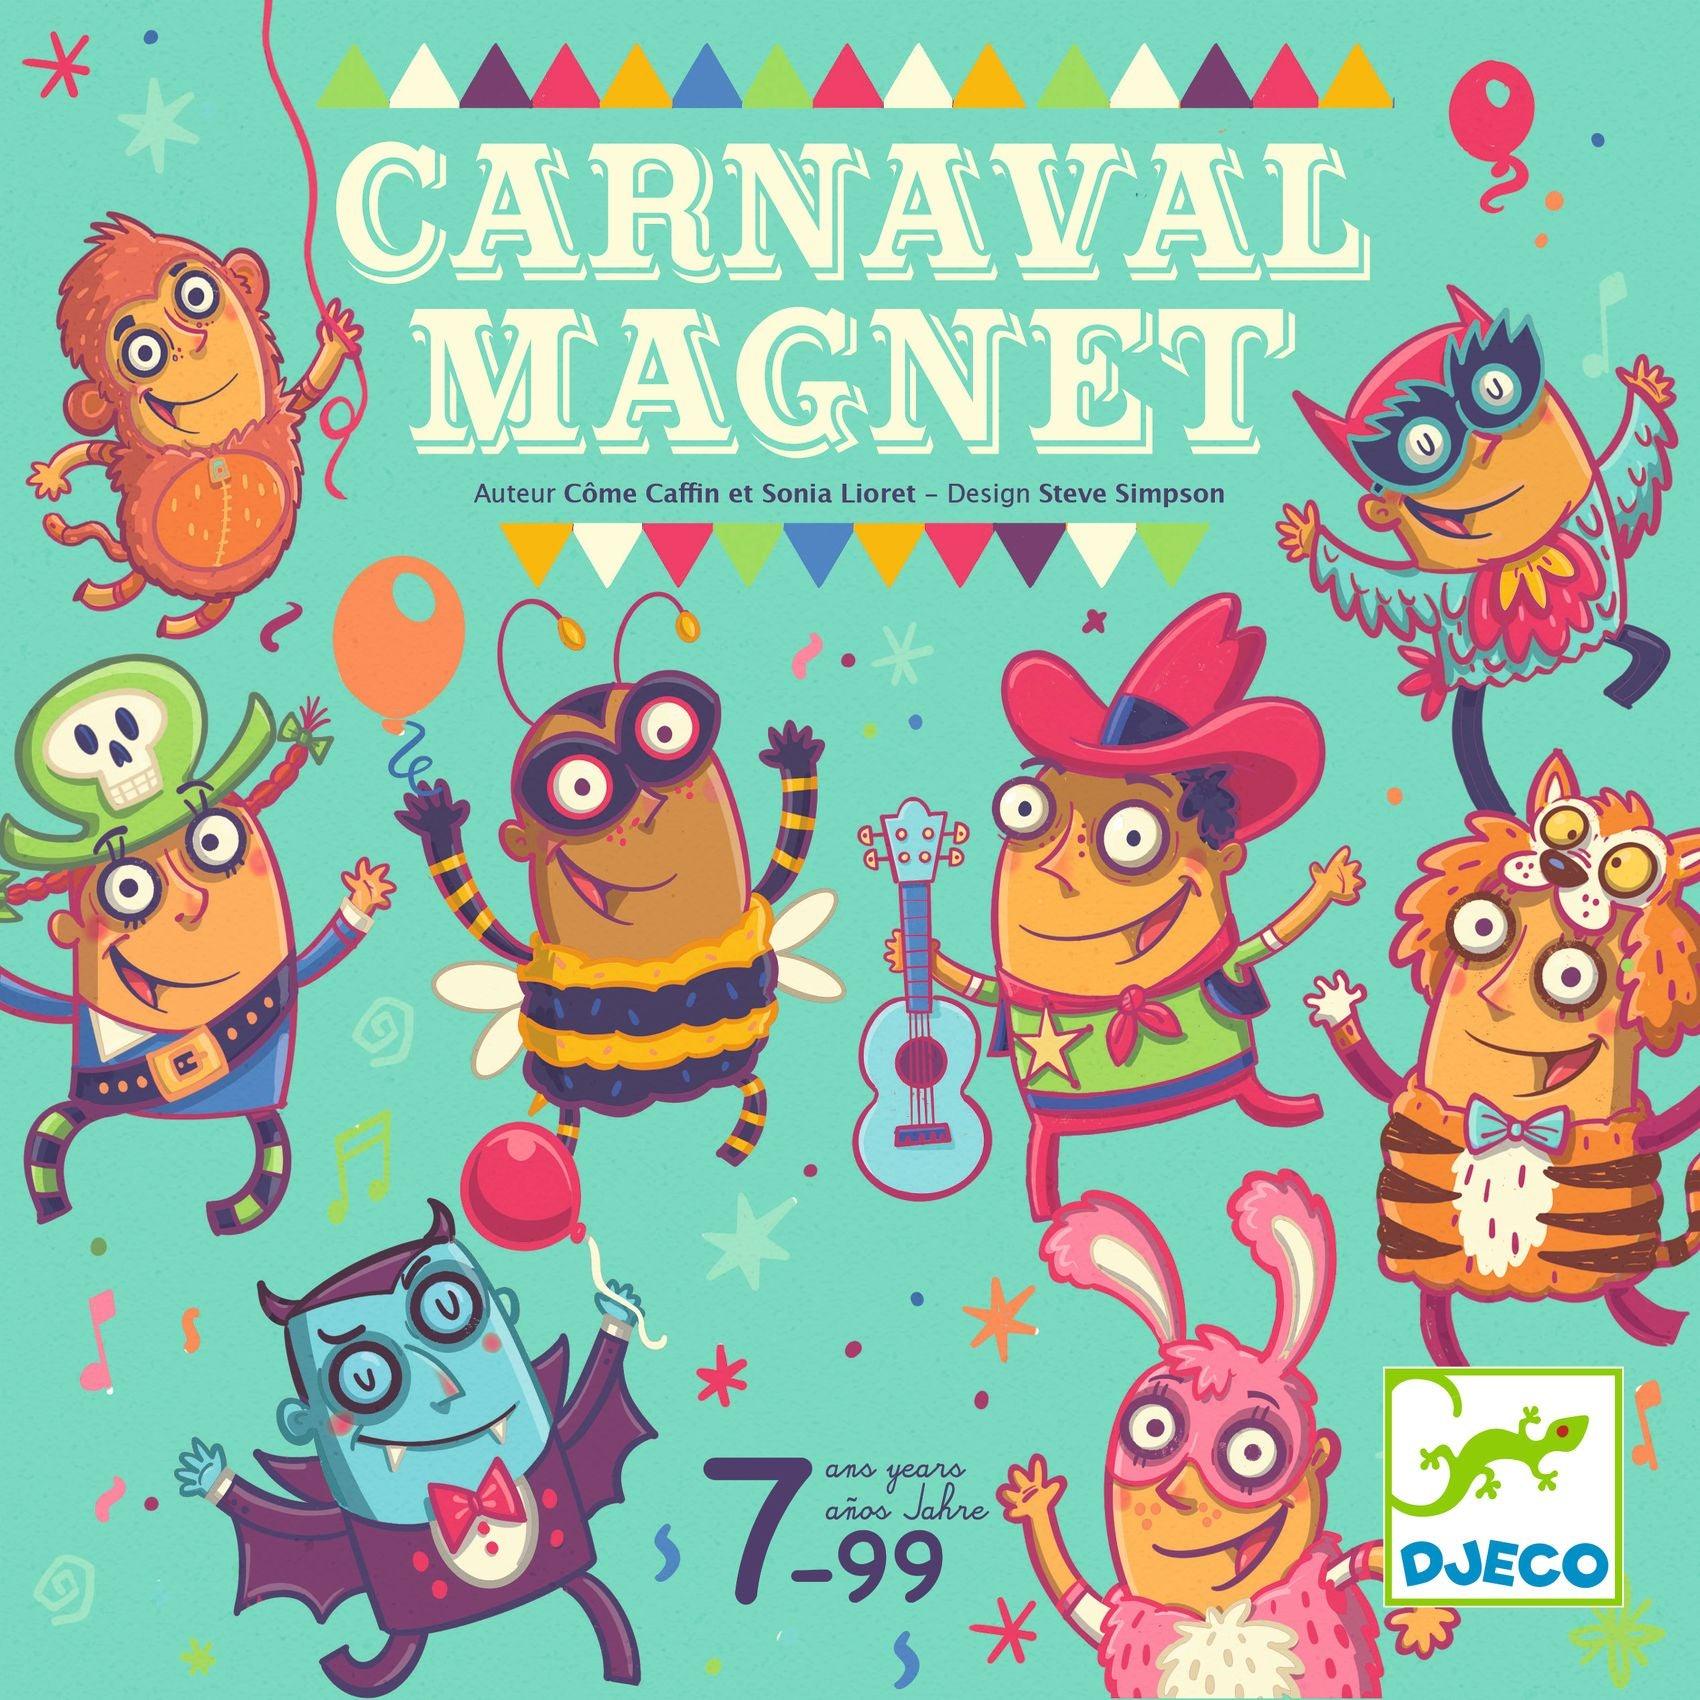 DJECO: Game de conseil d'aimant Carnaval